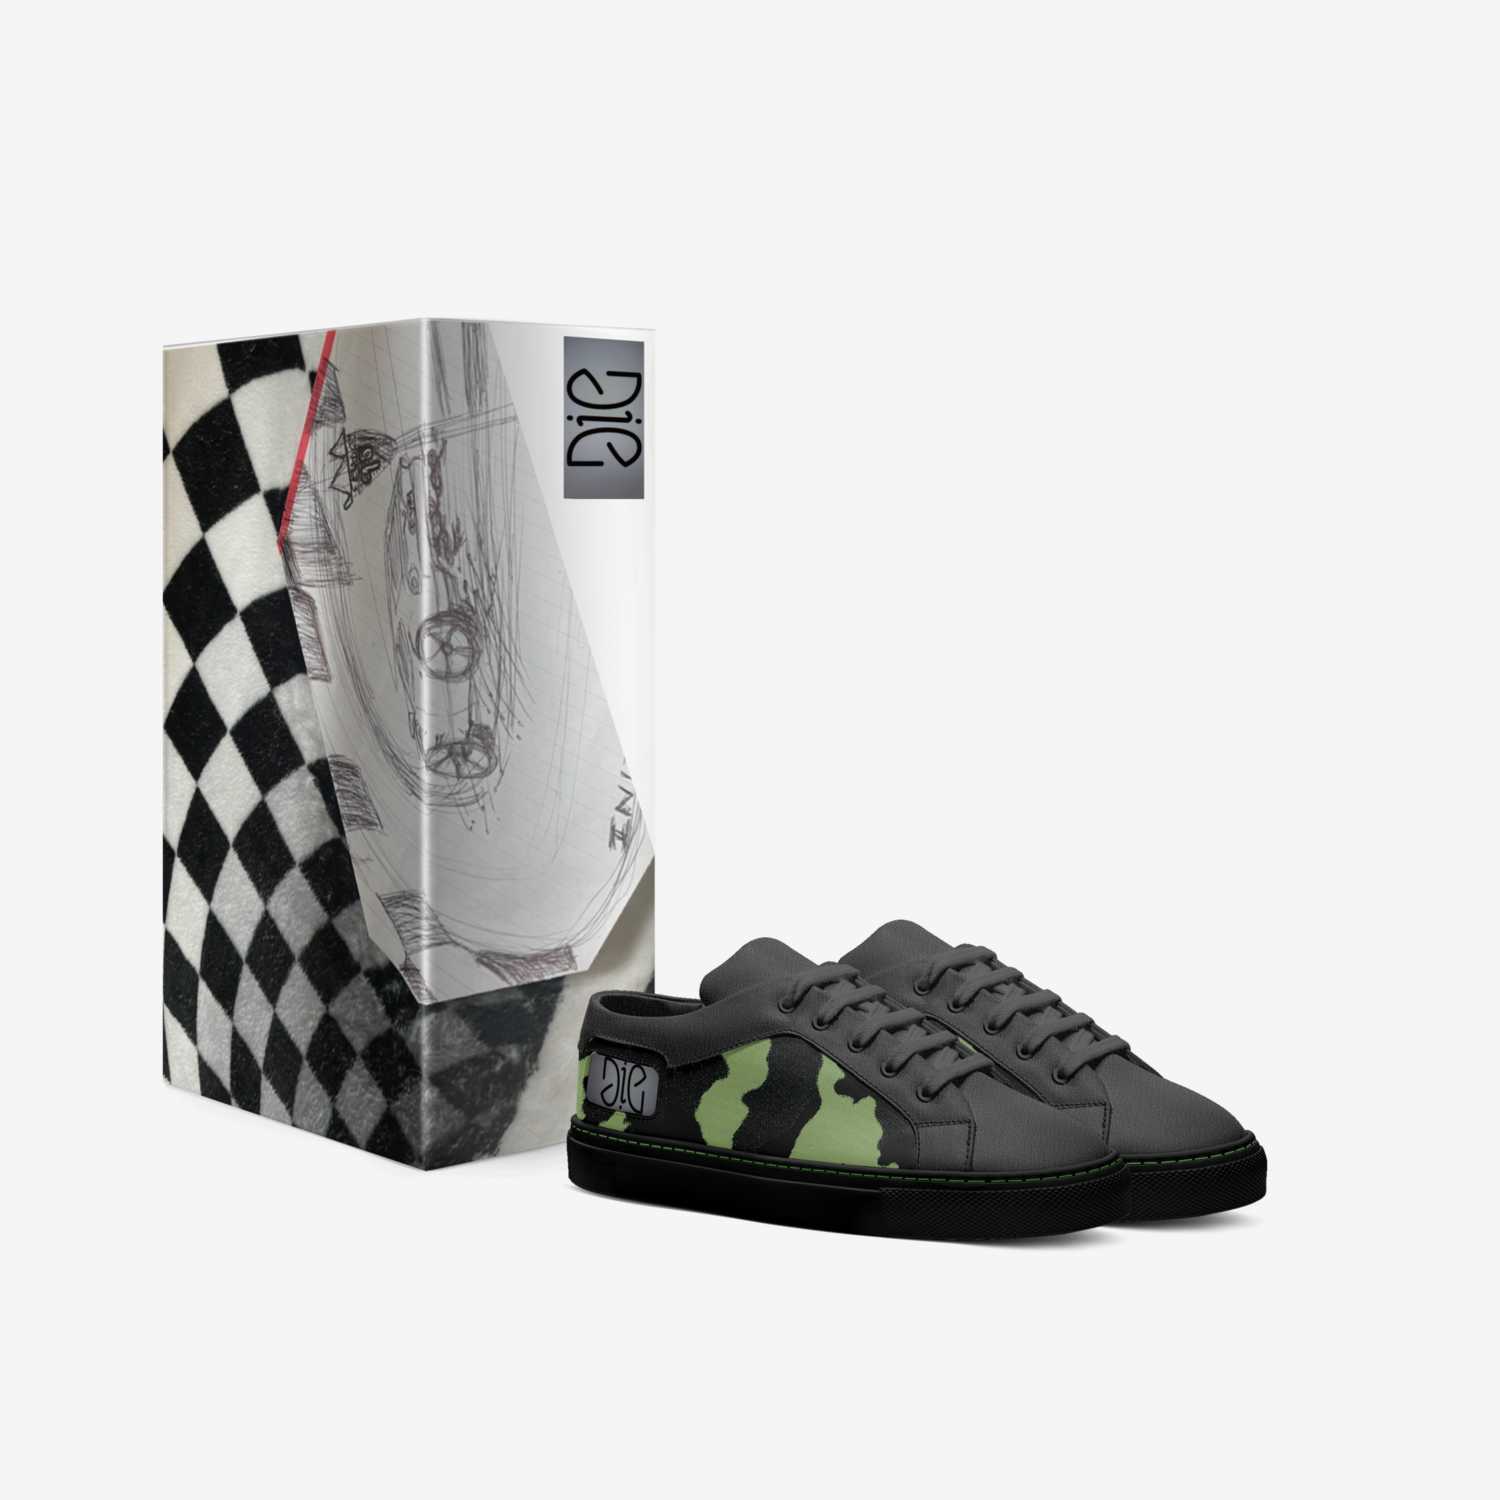 DIE KRU custom made in Italy shoes by Dumas Ortiz | Box view